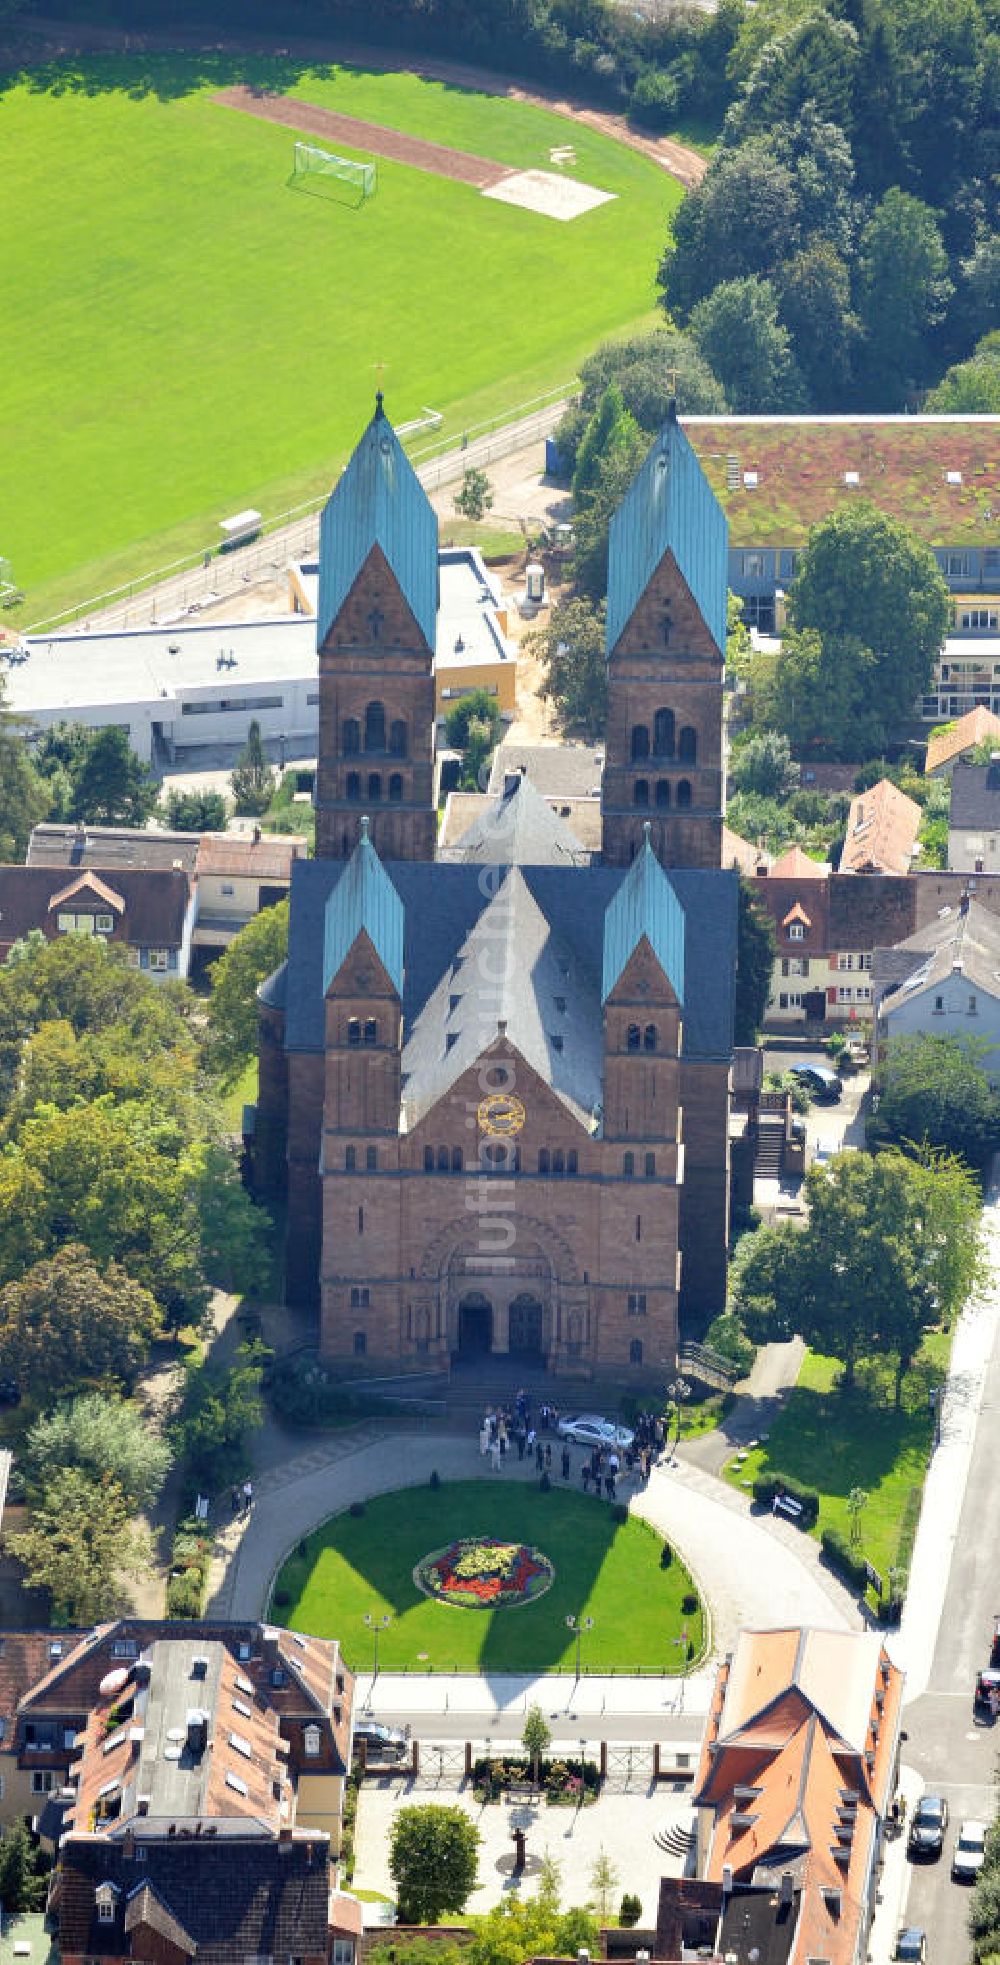 Bad Homburg aus der Vogelperspektive: Erlöserkirche in Bad Homburg in Hessen